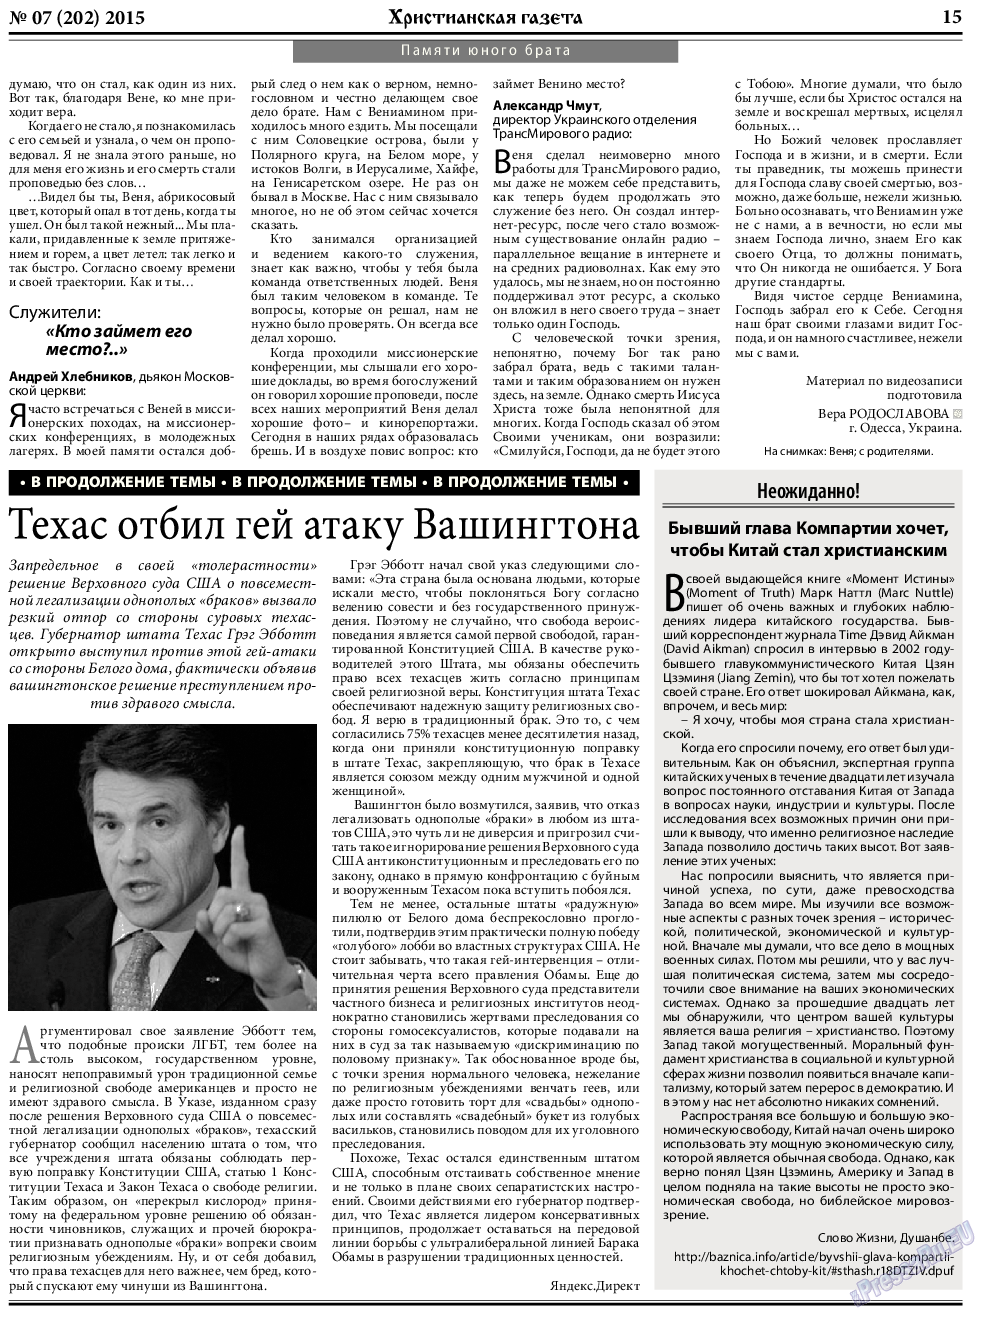 Христианская газета, газета. 2015 №7 стр.23